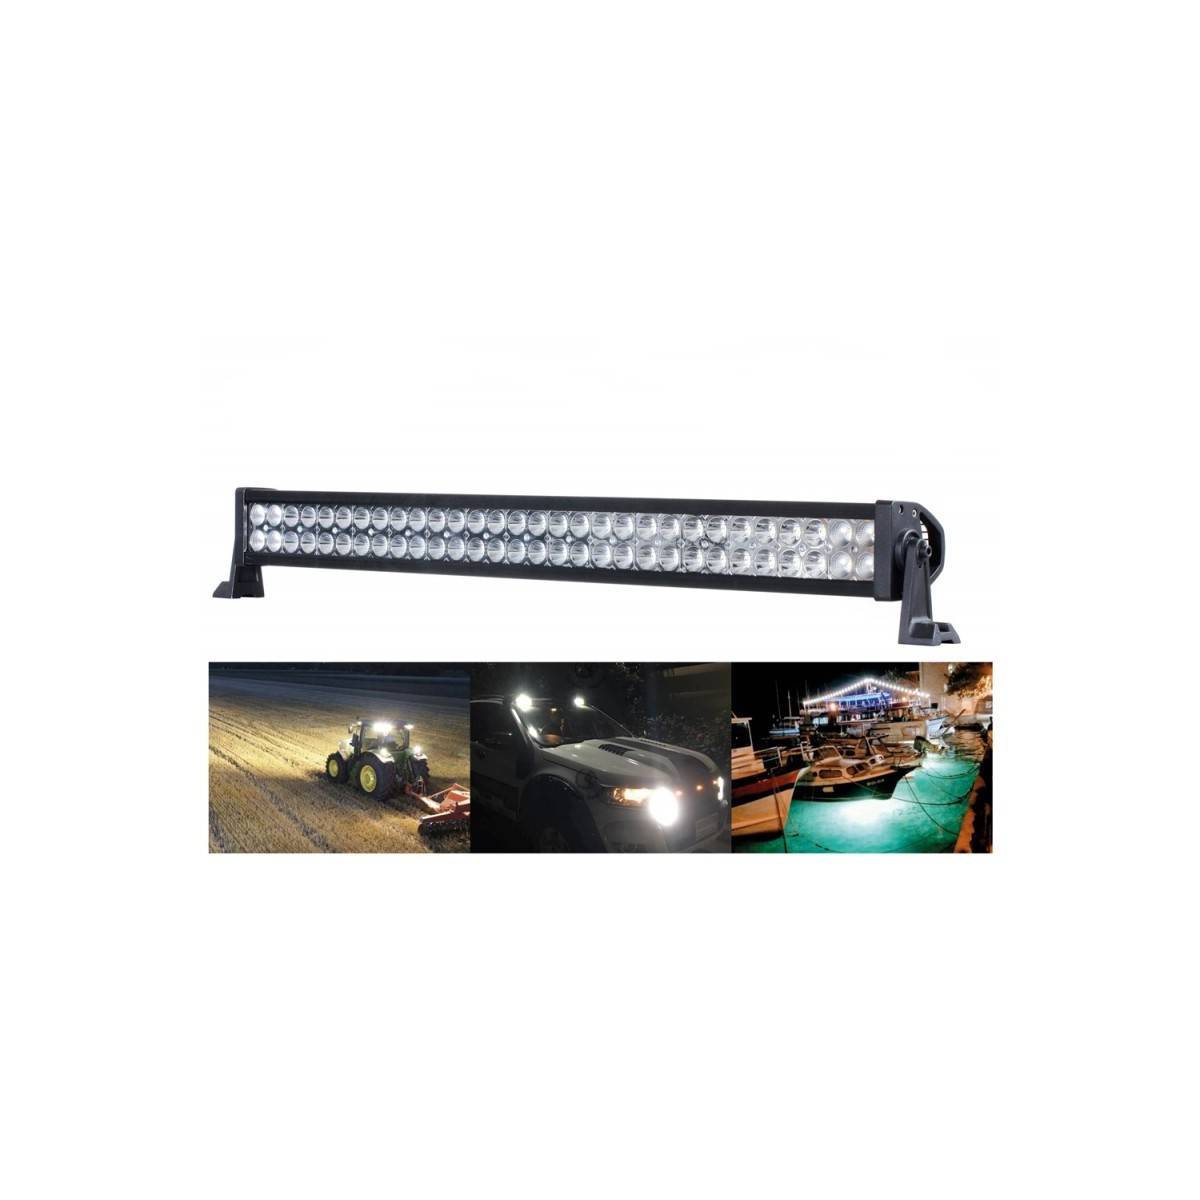 Barre LED 4x4 - Rampe LED 4x4 - 240W - 1280mm - 24 leds